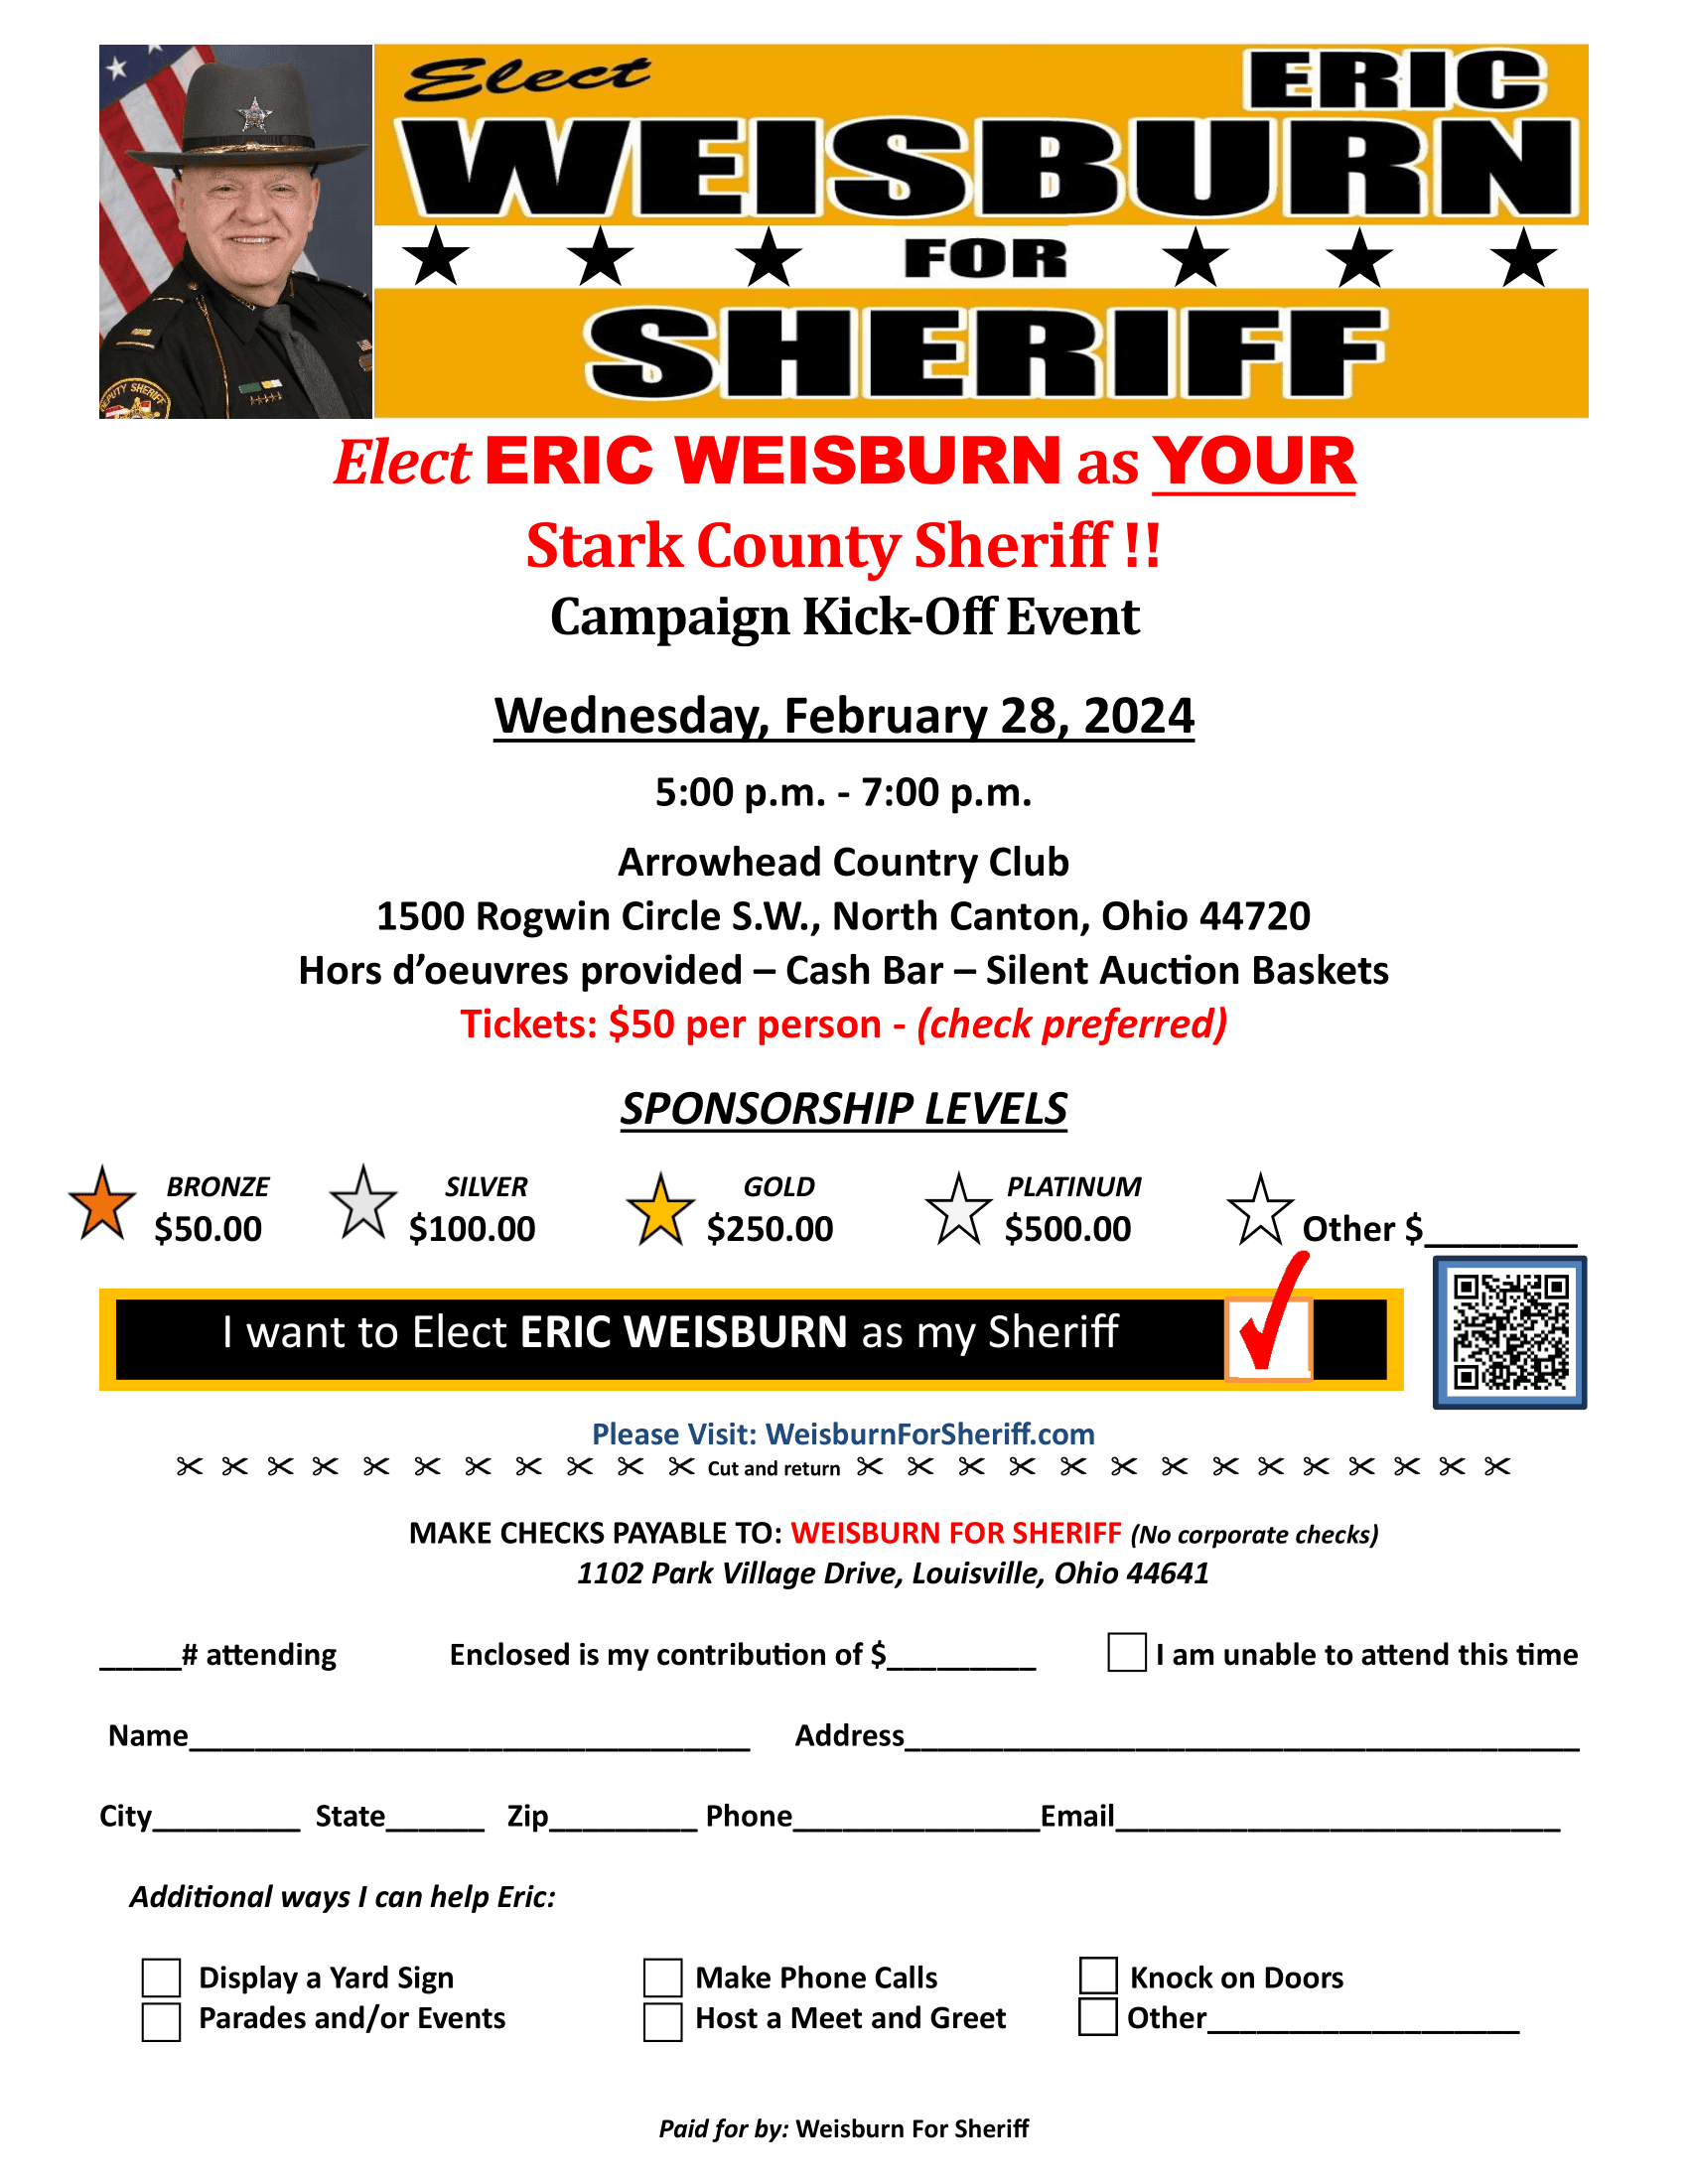 Weisburn for Sheriff Hero Image